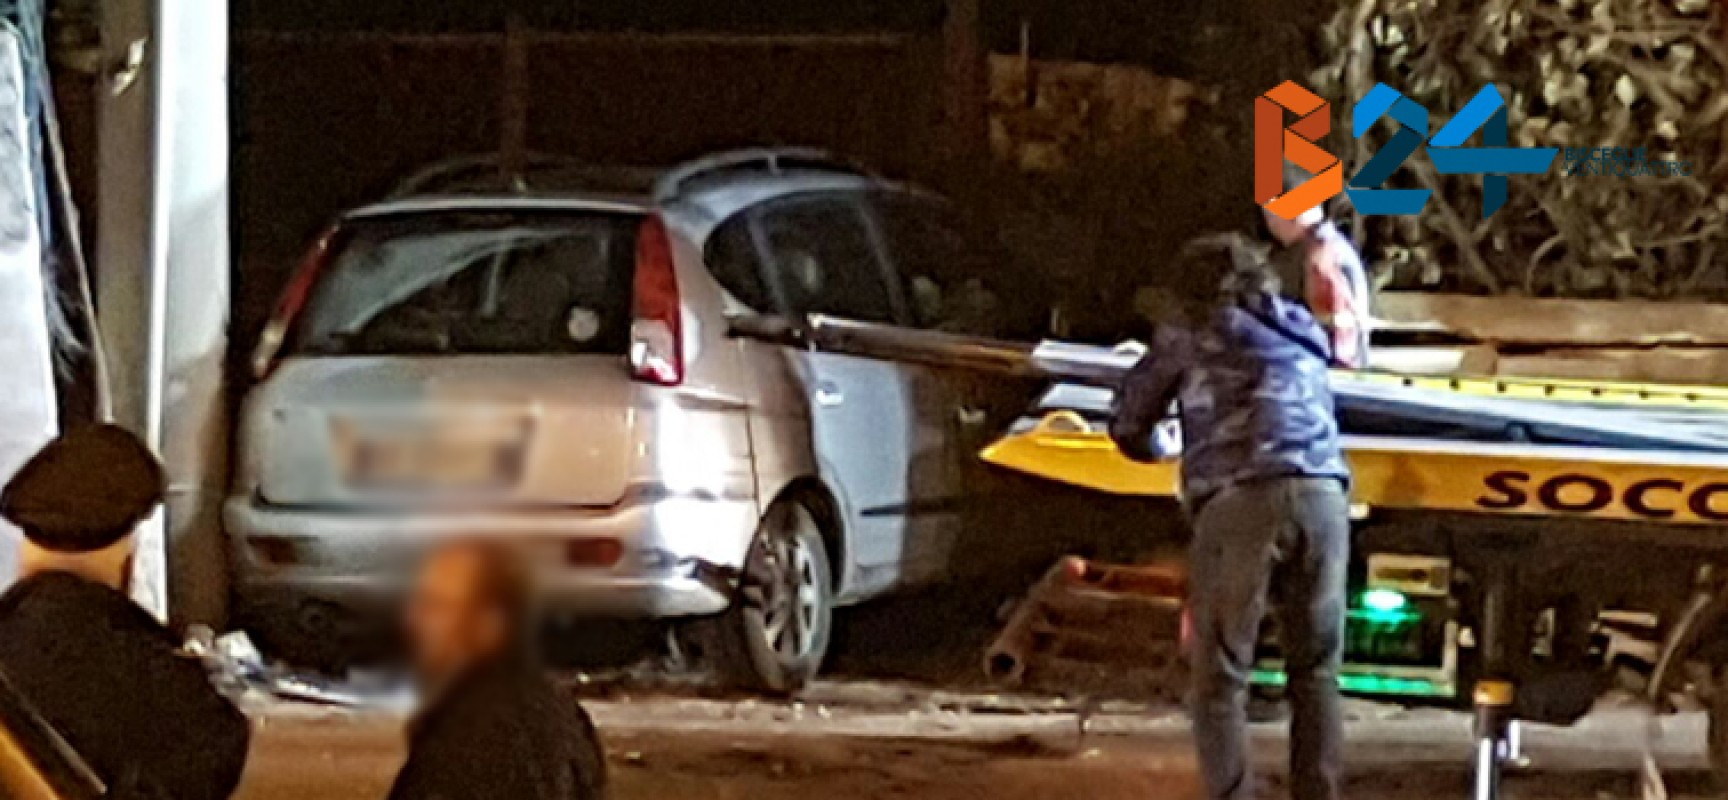 Incidente in via Imbriani, auto si incastra davanti a proprietà privata